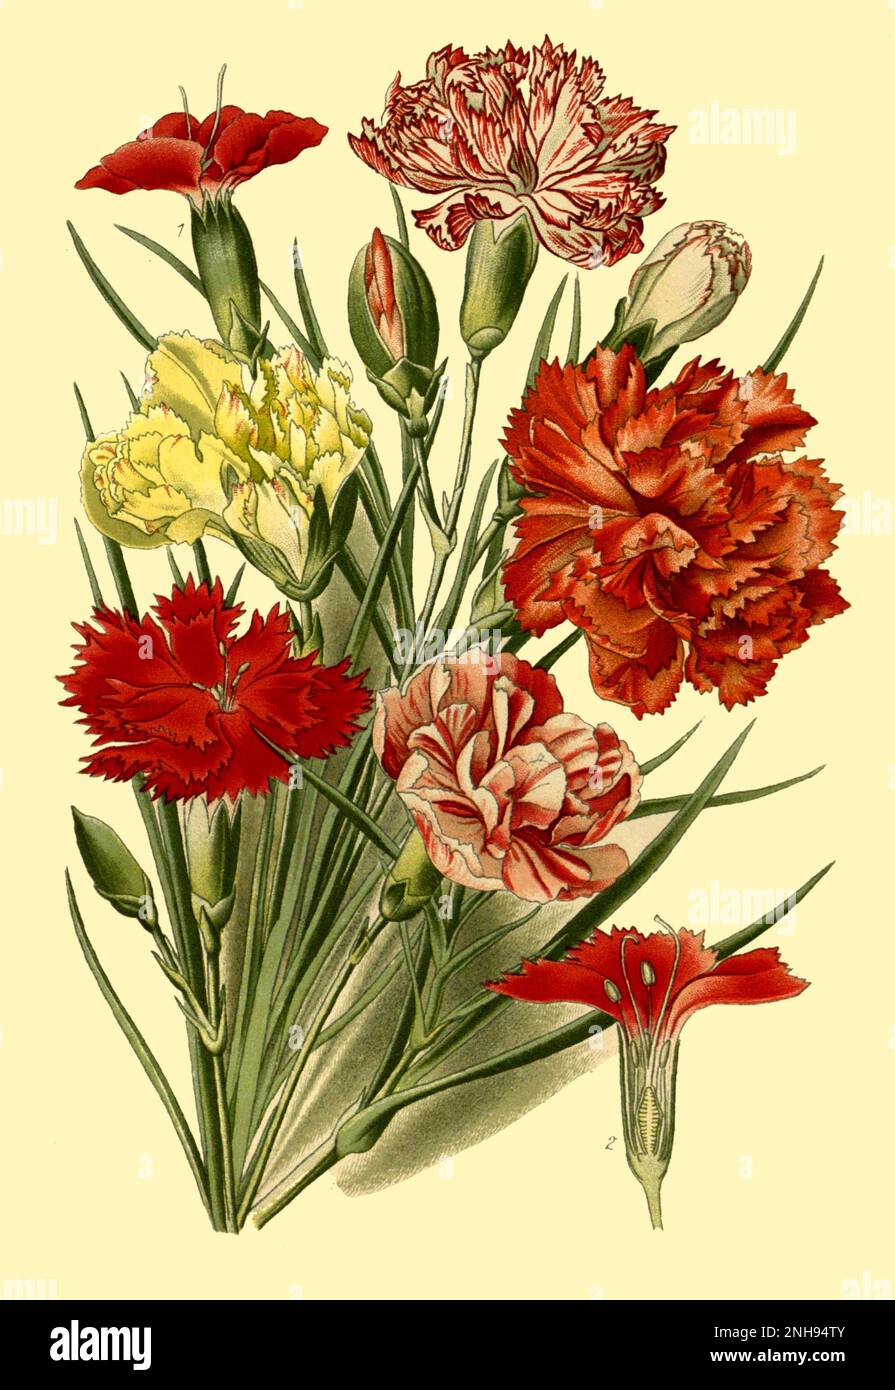 Nelke, Dianthus caryophyllus, auch als Grenadine oder Nelkenrosa bezeichnet. 1716 schuf der englische Botaniker Thomas Fairchild (c.1667-1729) die weltweit erste künstliche Hybridpflanze, Dianthus Caryophyllus barbatus, auch bekannt als Fairchild's Mule. Es war eine Kreuzung zwischen einem Sweet William (Dianthus barbatus) und einer rosa Nelke (Dianthus caryophyllus), die hier abgebildet ist. Stockfoto